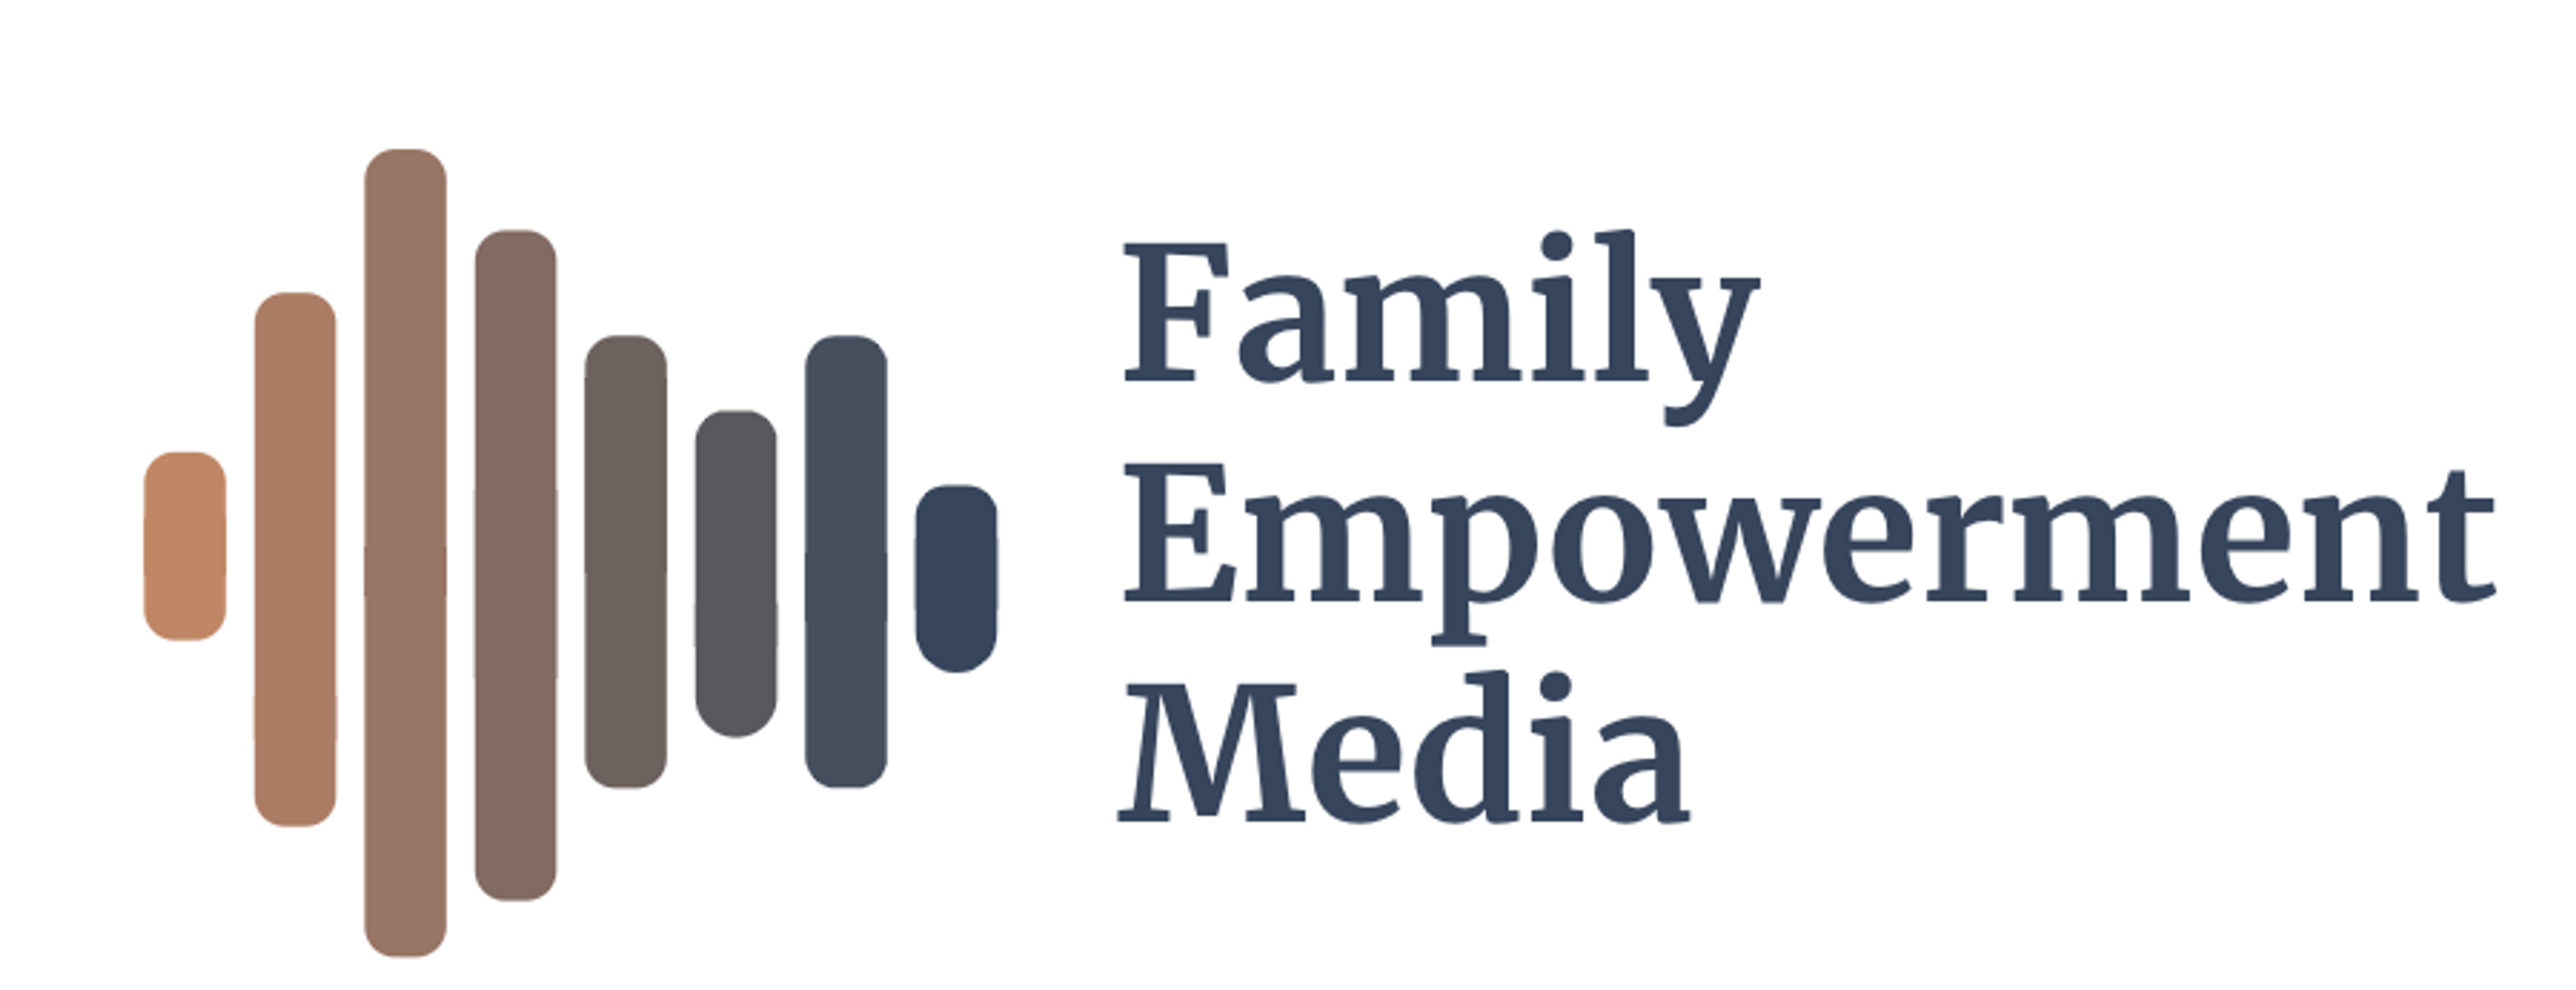 Family Empowerment Media (FEM)